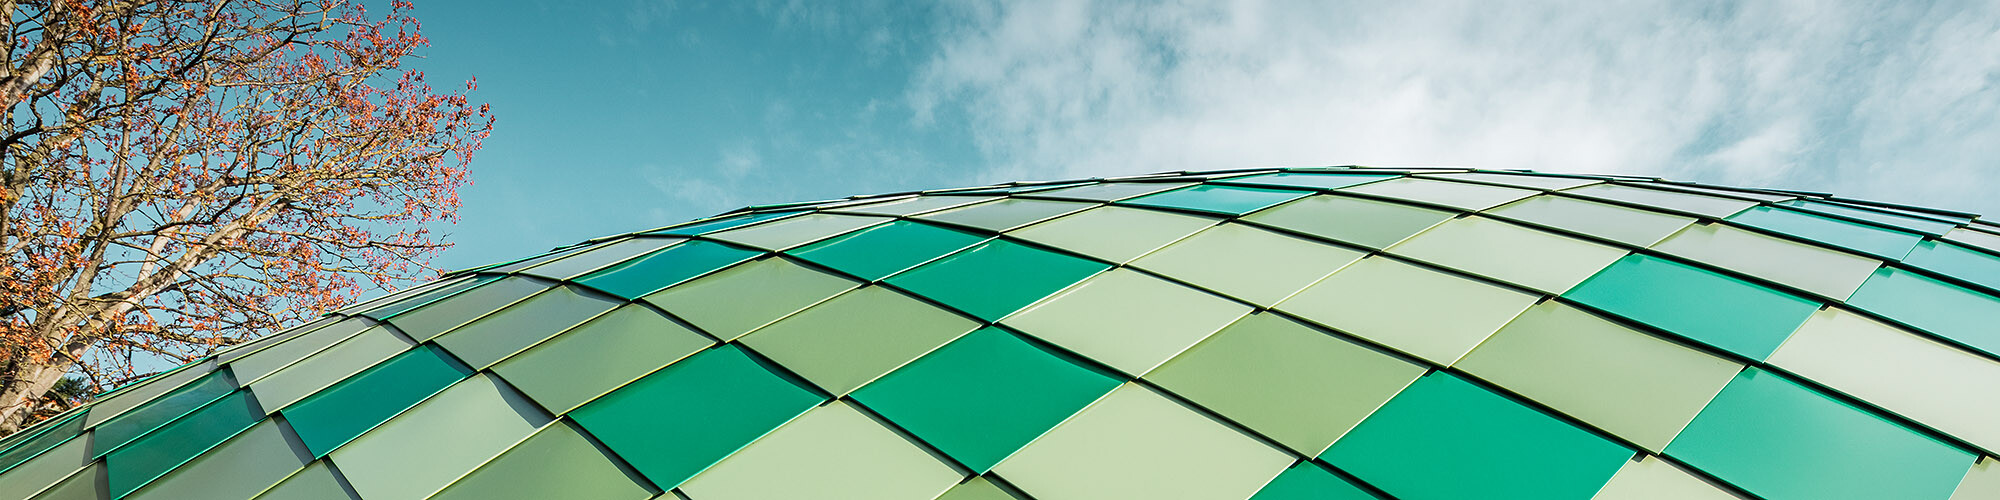 Detailní záběr na vícenásobně zakřivenou hliníkovou fasádu ve třech různých odstínech zelené od PREFA, v pozadí je vidět obloha a strom.